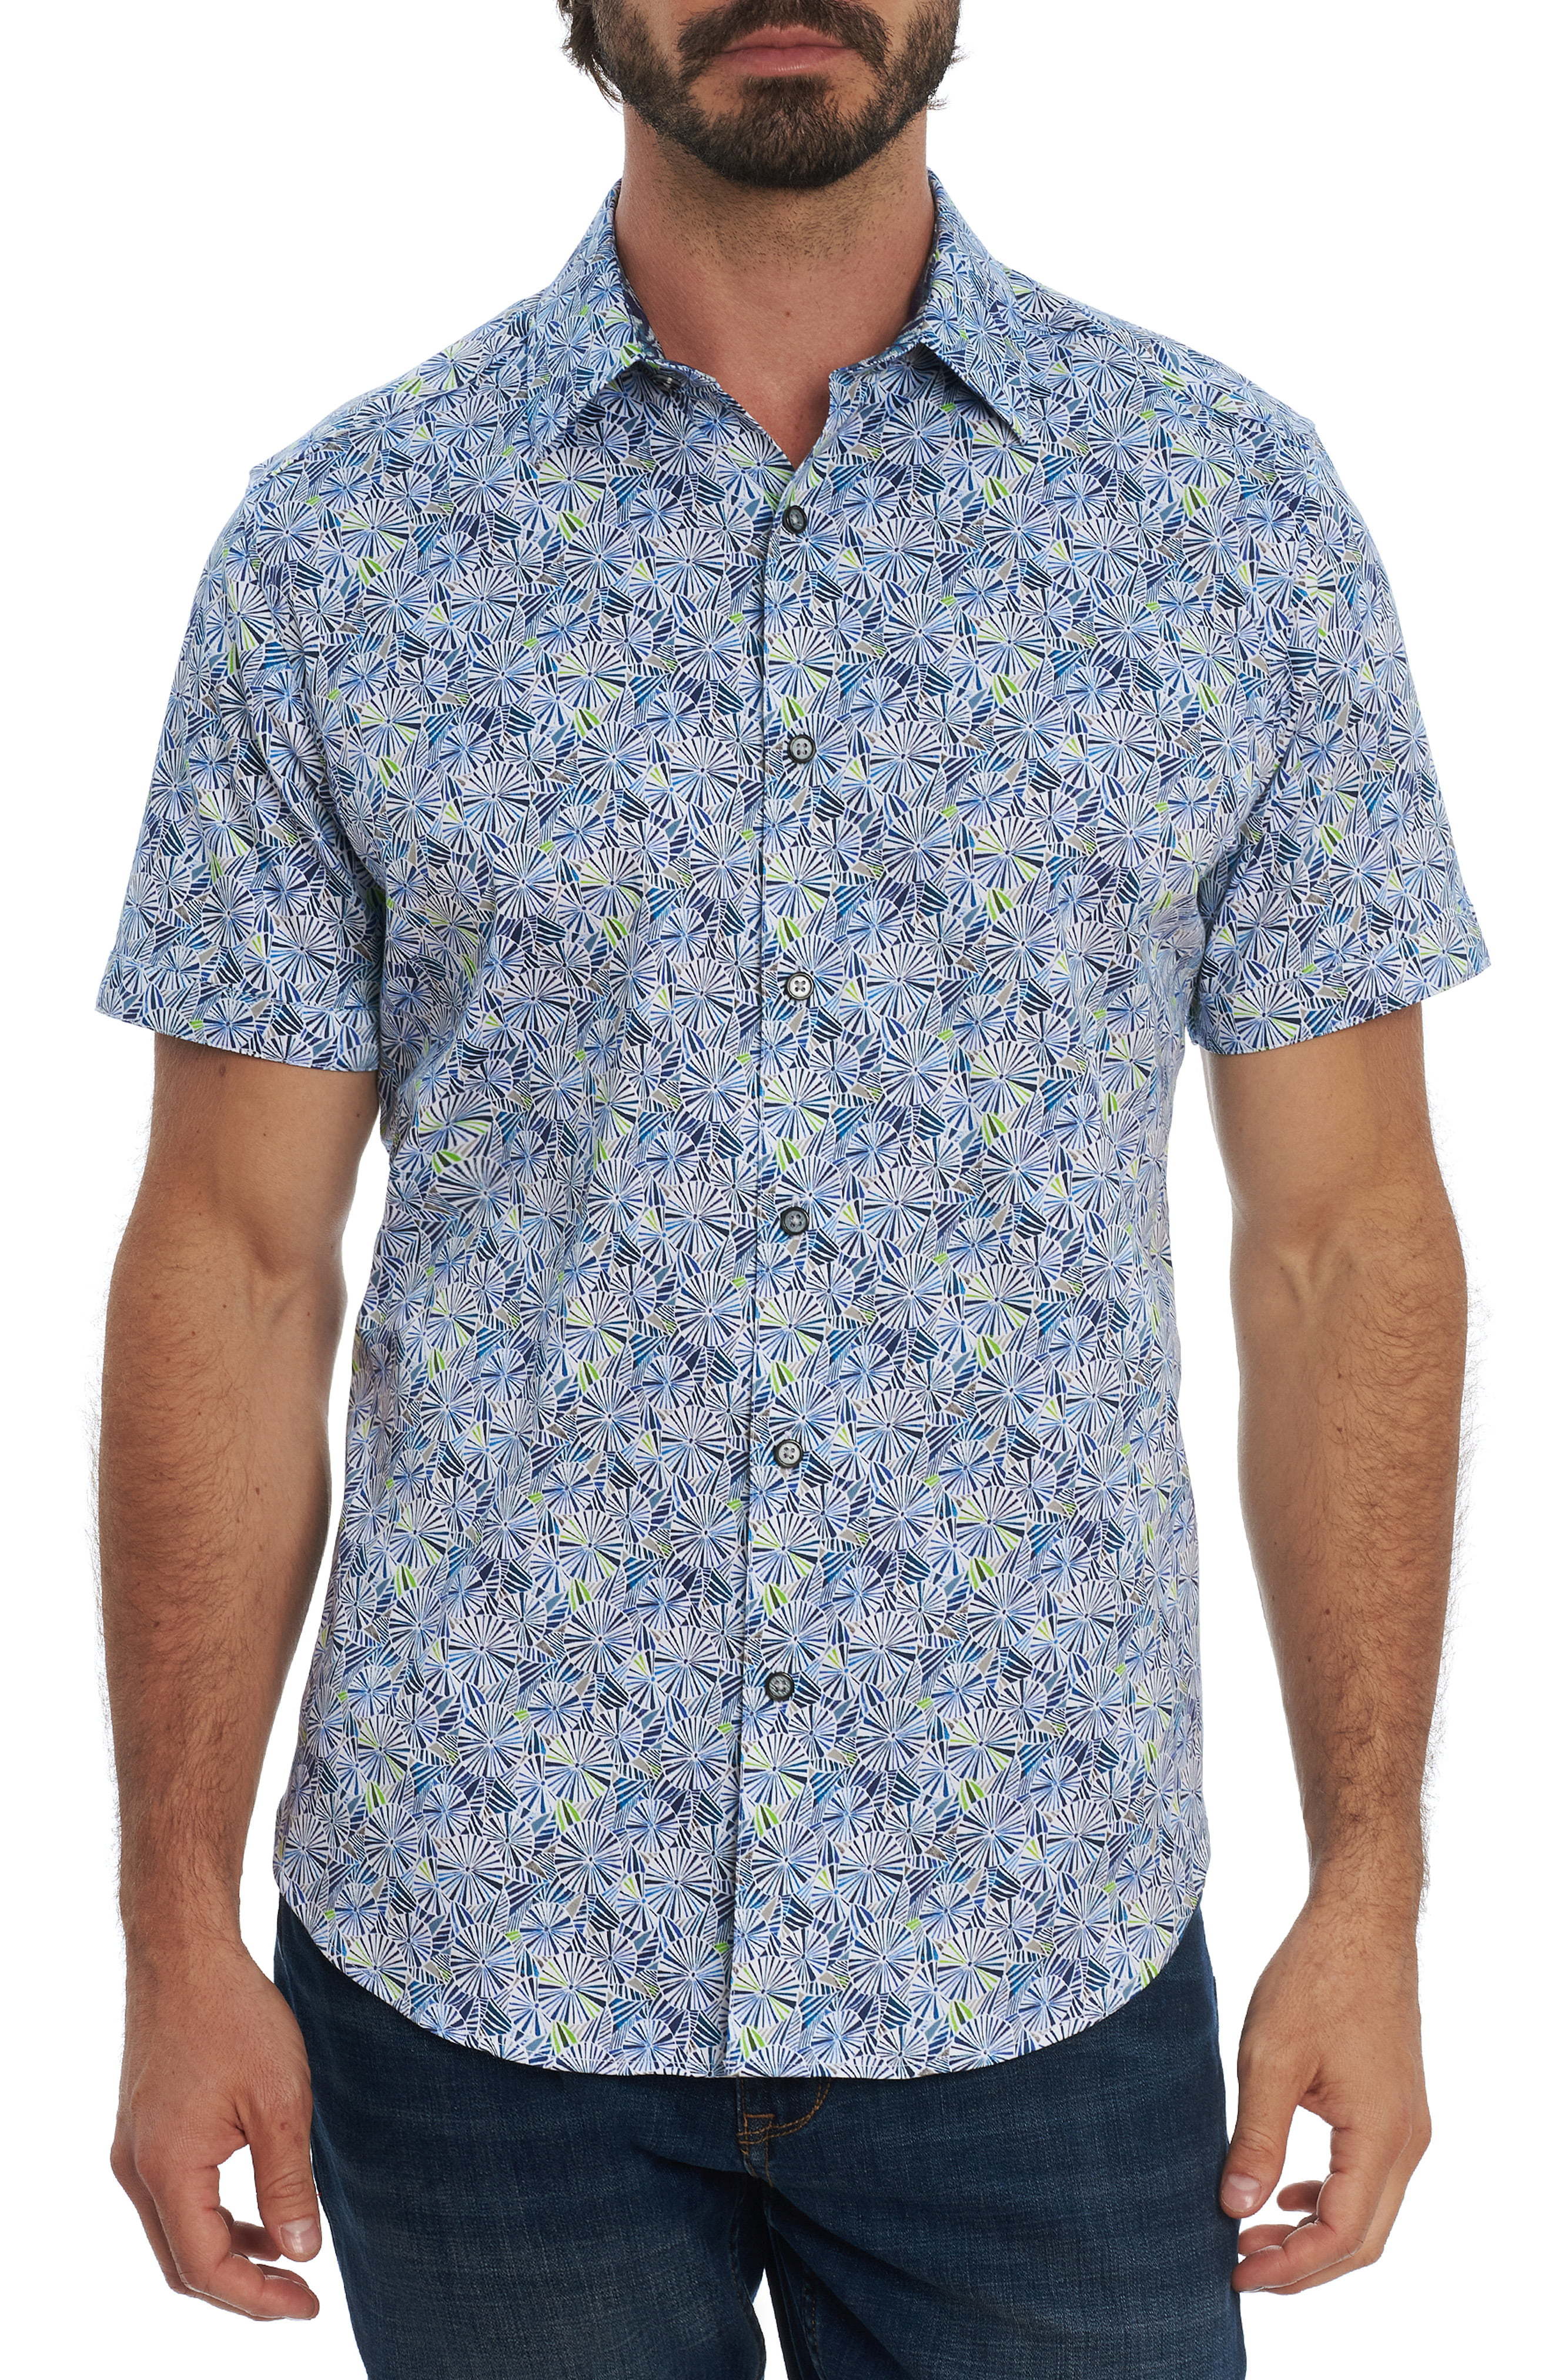 Robert Graham Ballard Floral Short Sleeve Button Up Shirt, $188 ...